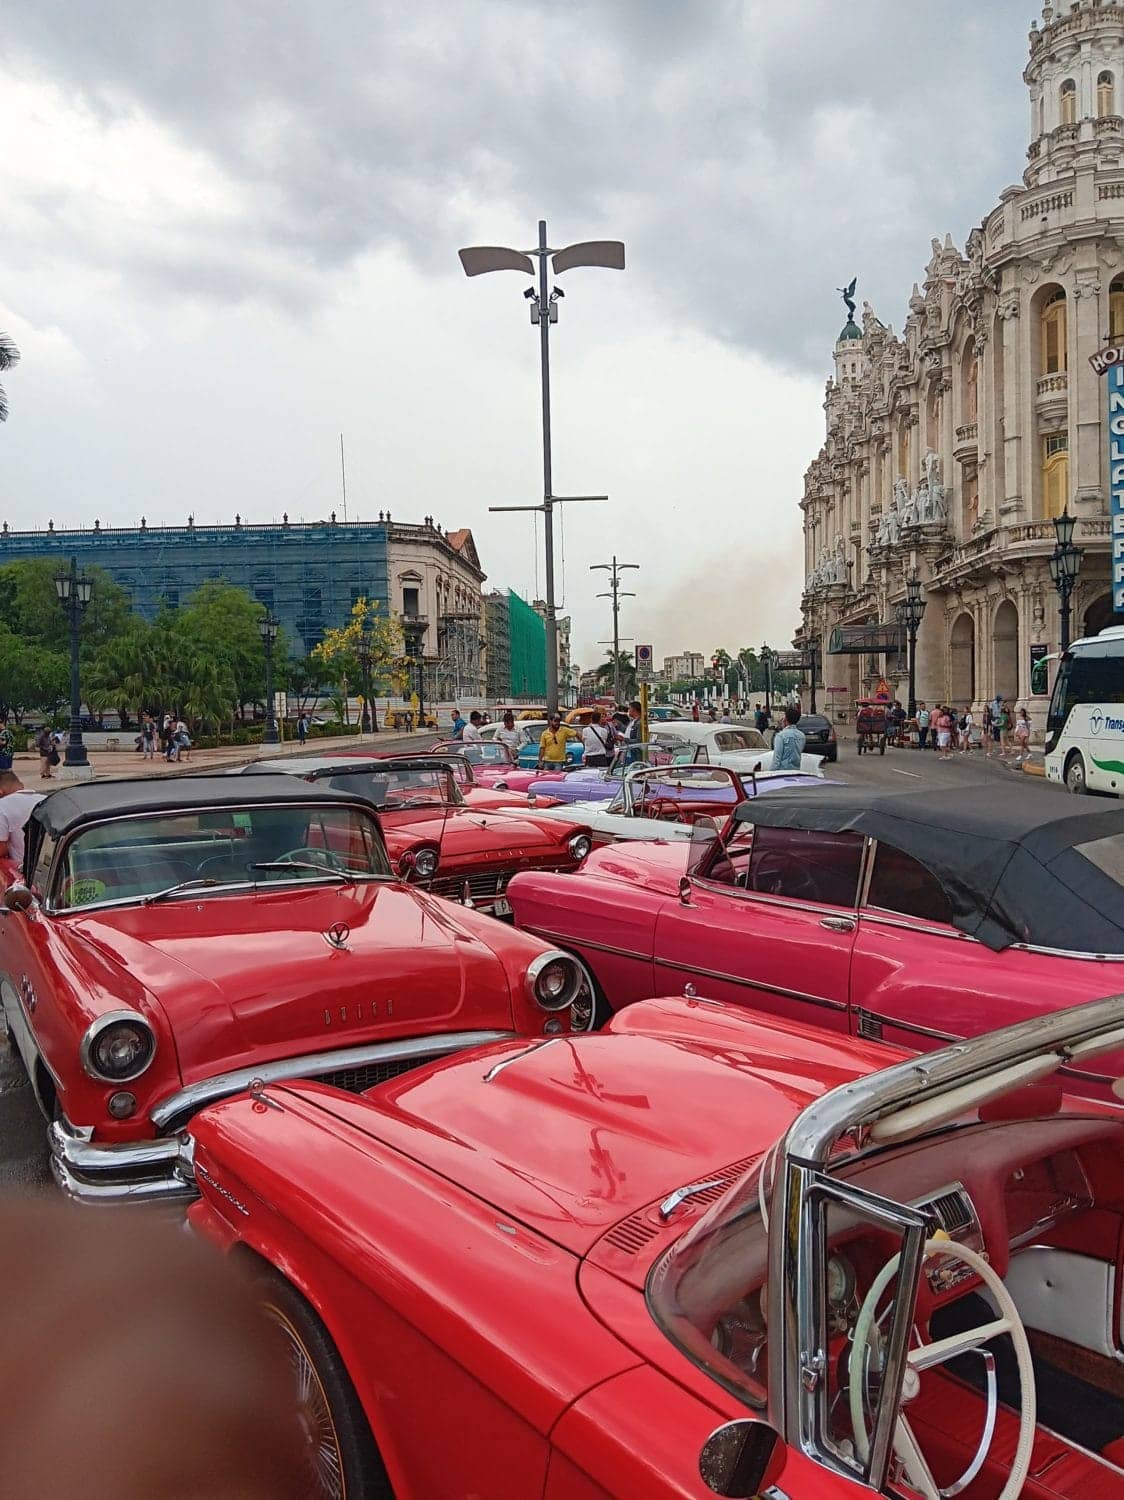 Classic-1950s-Cars-Havana-Cuba-2023-1, My Cuban Diary: June 2023, World News & Views 